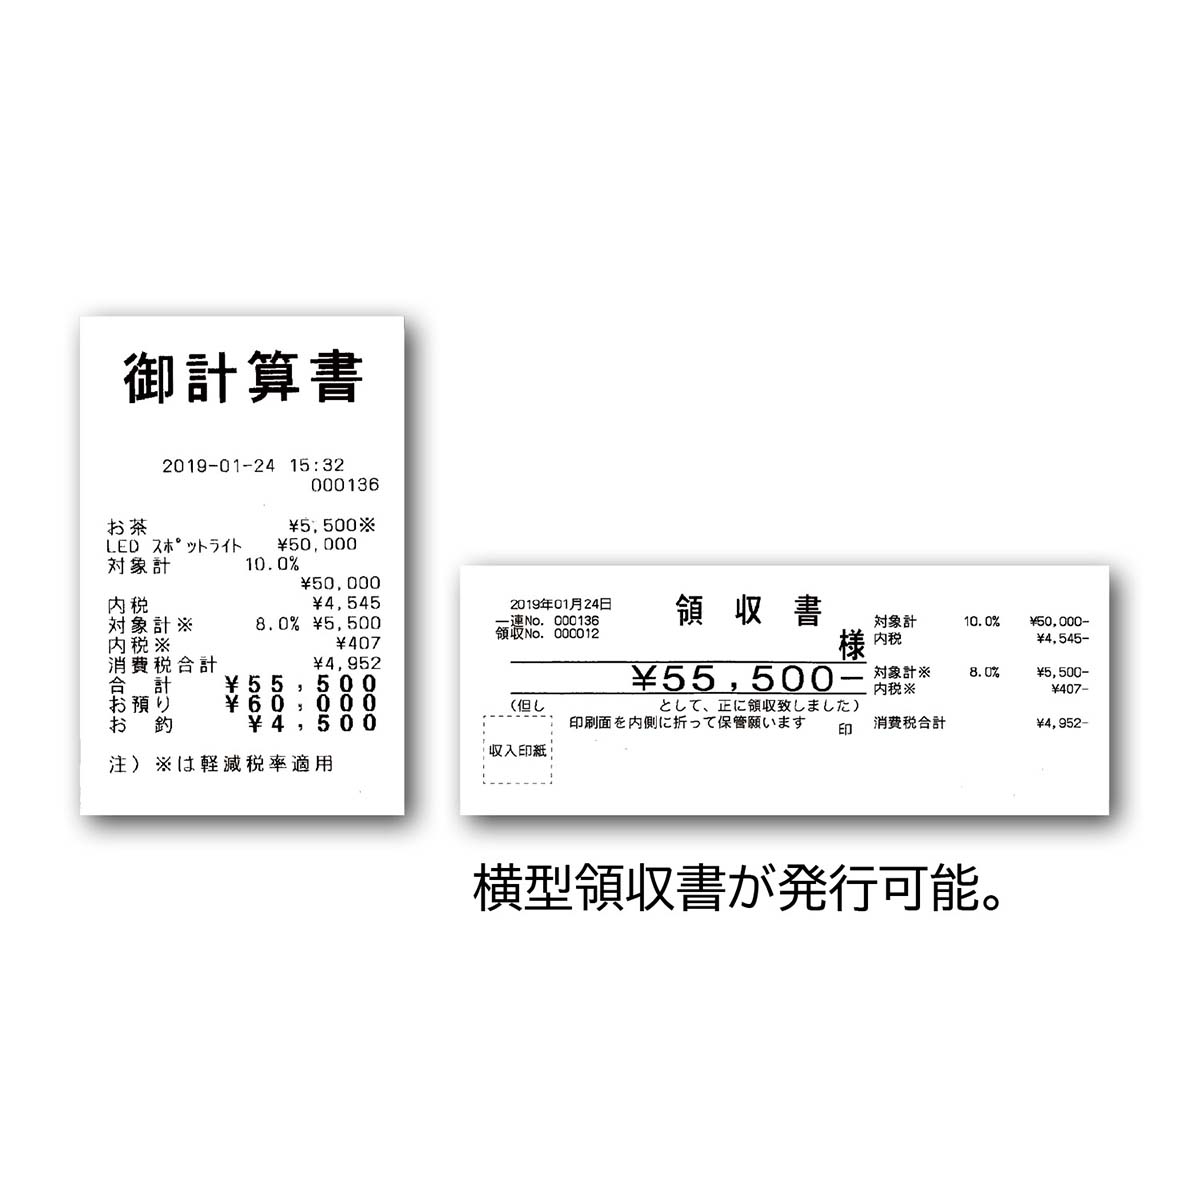 東芝テック レジスター MA-700-10 10部門タイプ ホワイト ロール紙10巻付き - 1